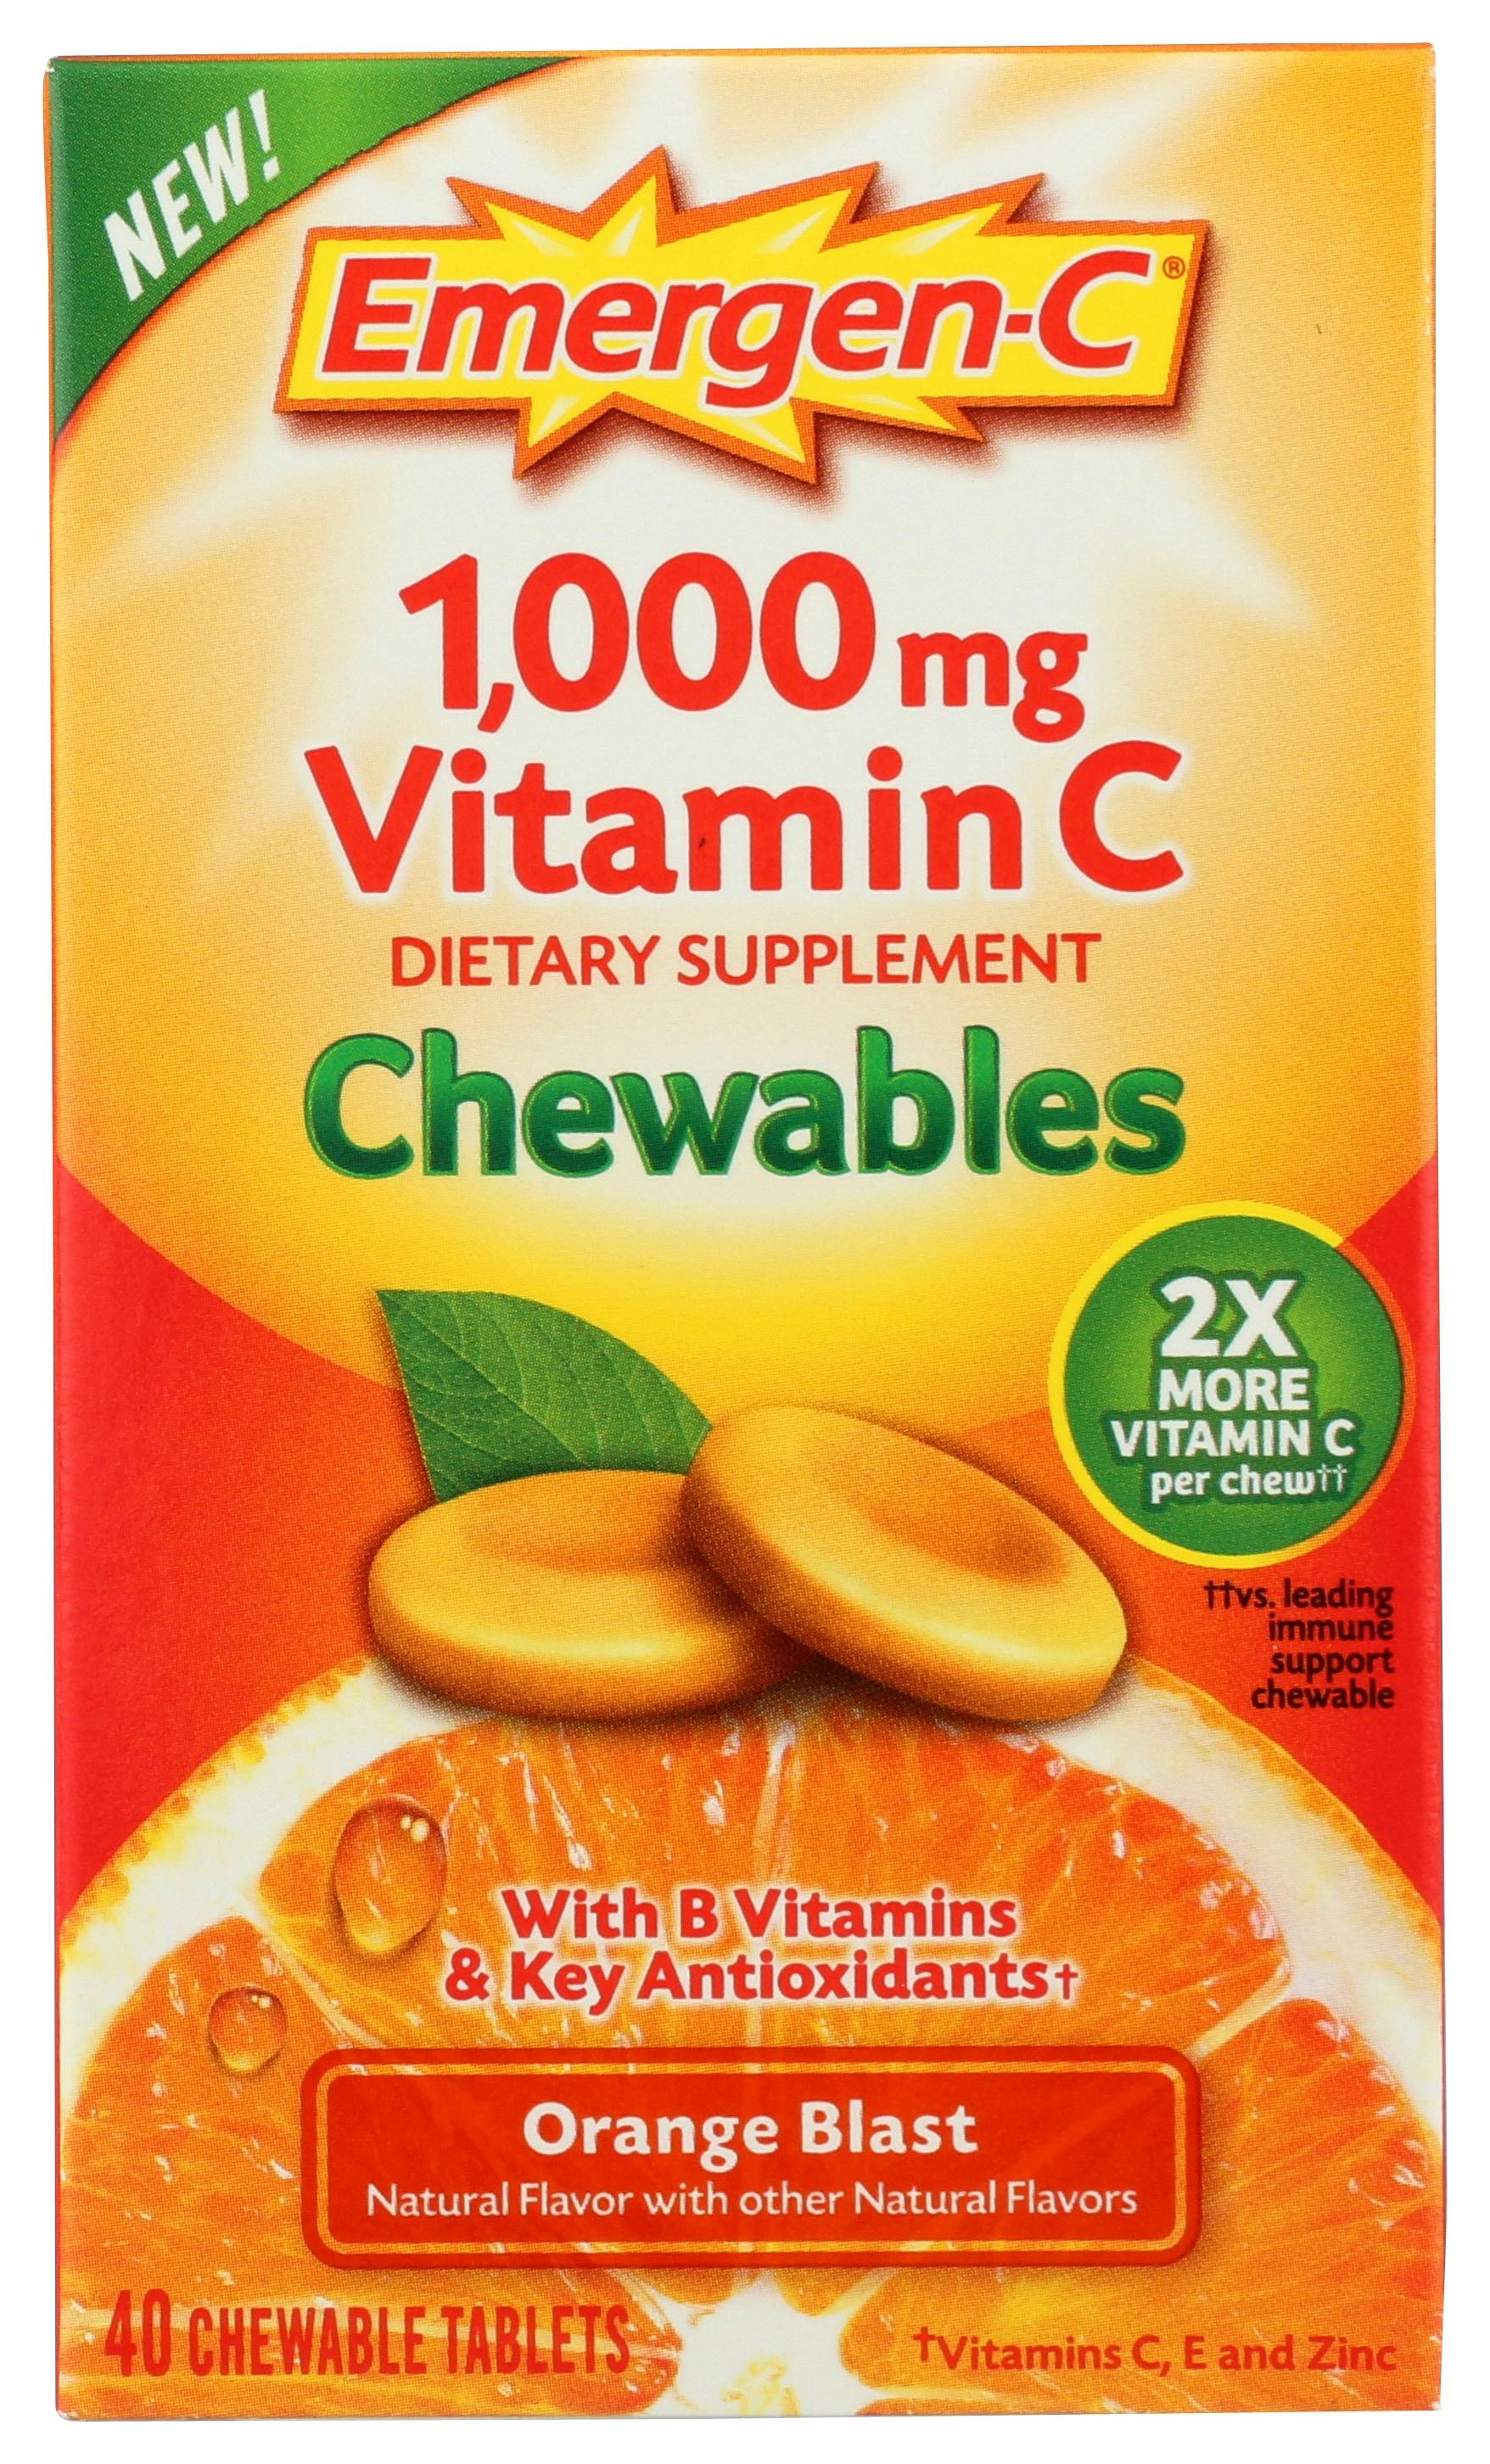 Emergen-C Vitamin C Chewables